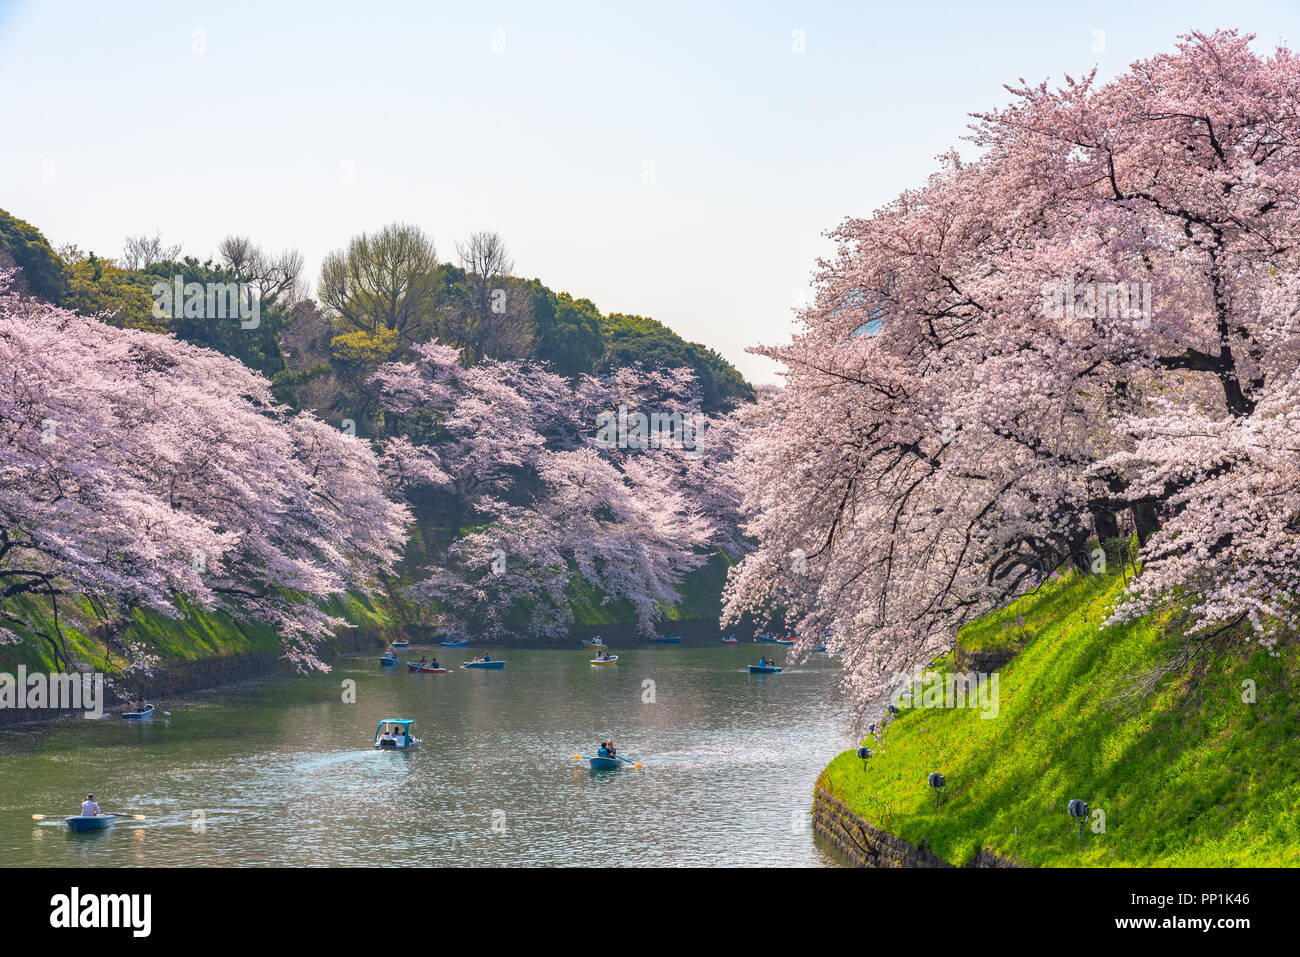 La cerise fleurit autour de Chidorigafuchi Park, Tokyo, Japon. La partie la plus septentrionale de son château est aujourd'hui un parc Chidorigafuchi nom Park. Banque D'Images